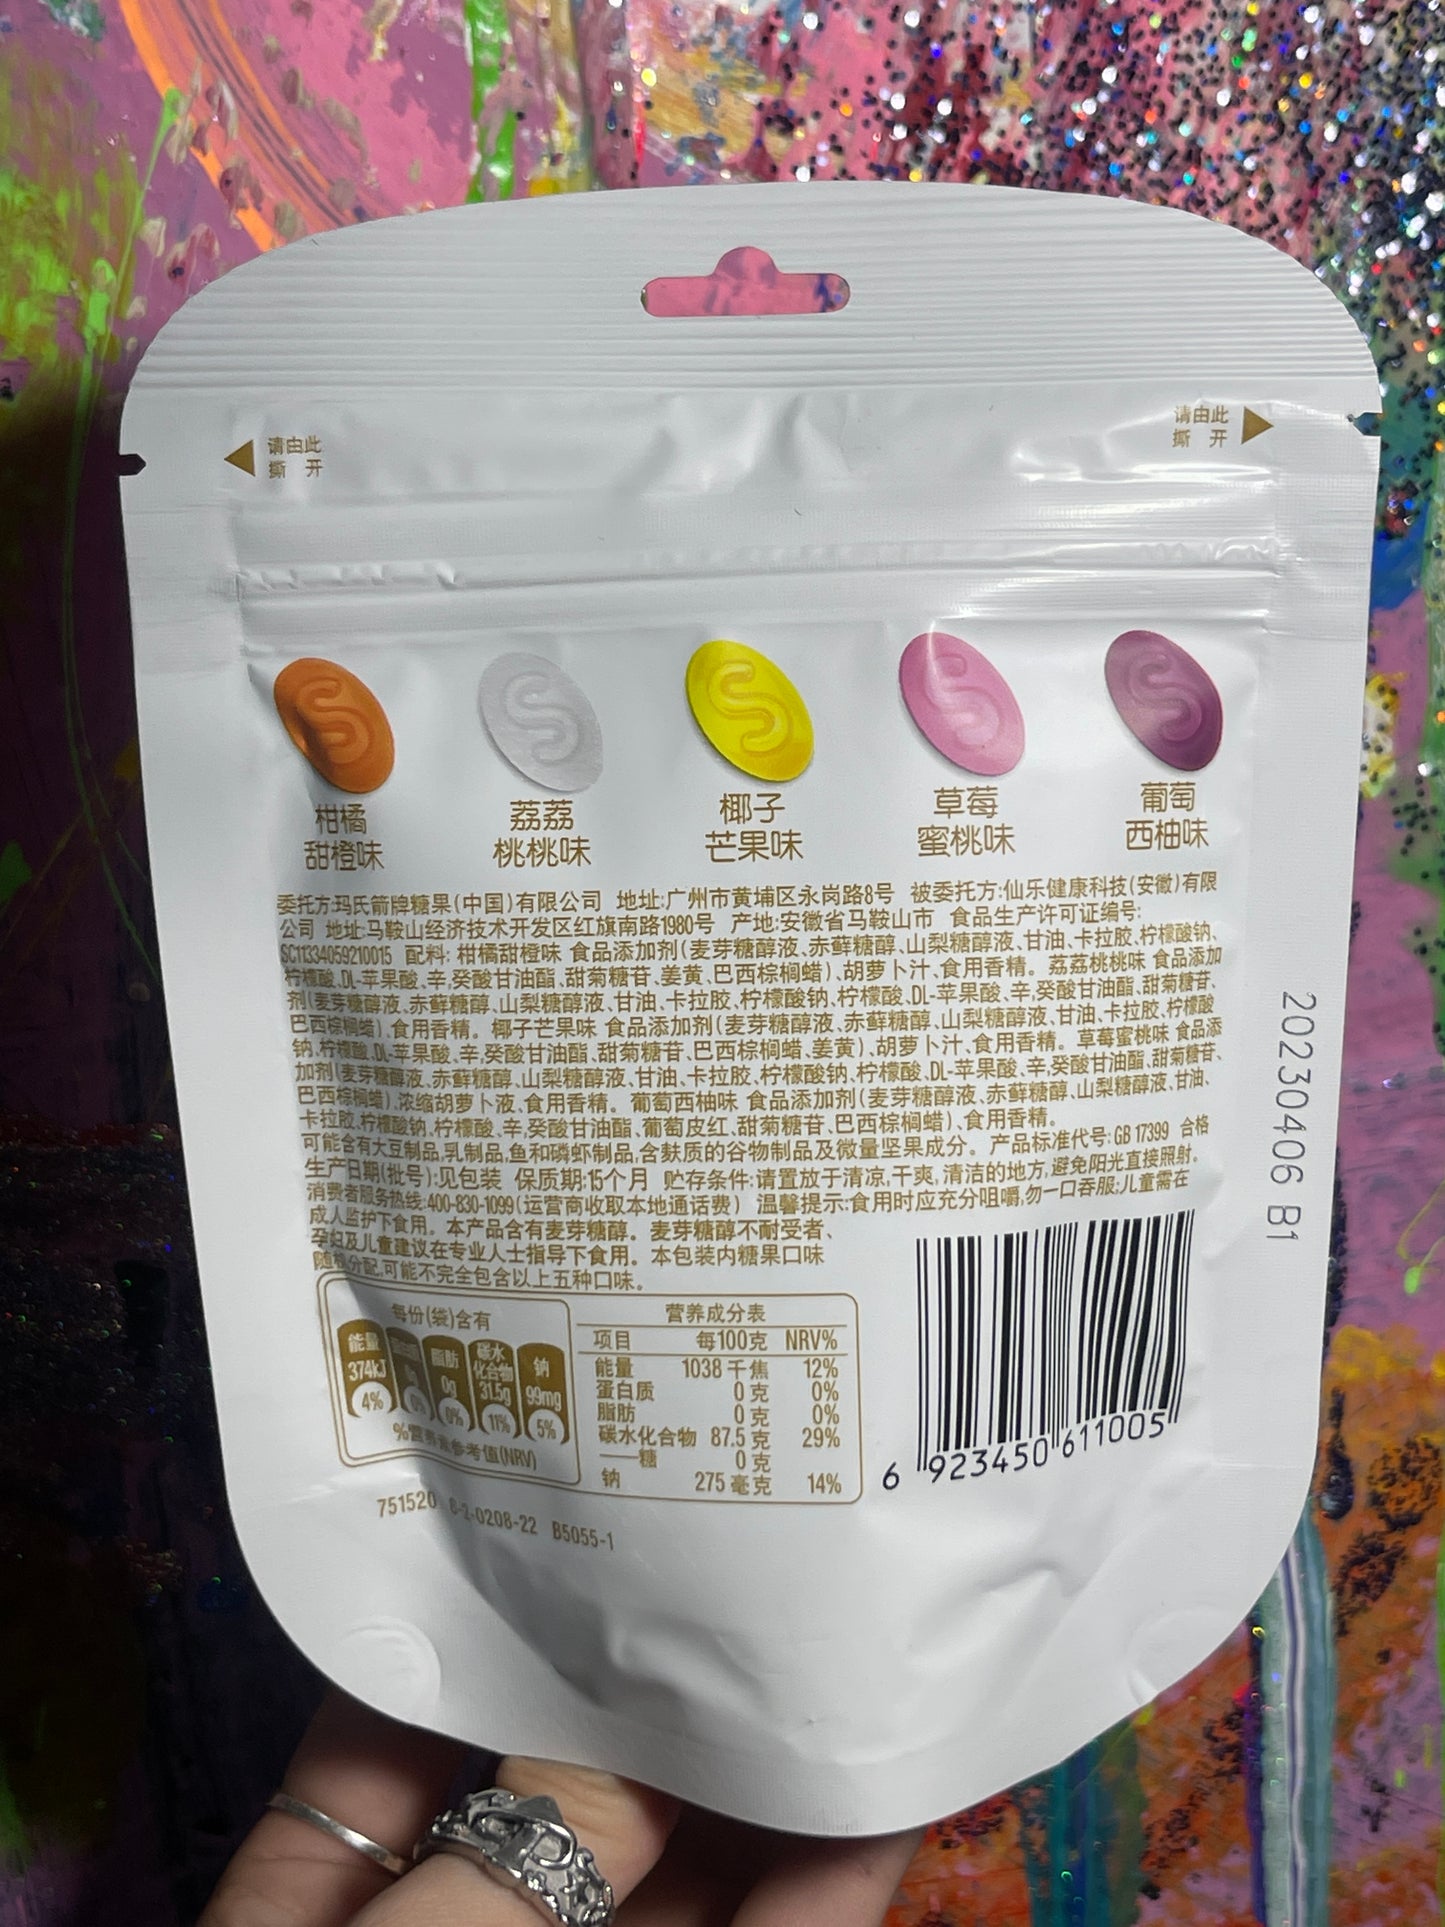 Exotic Skittles Gummies (China)